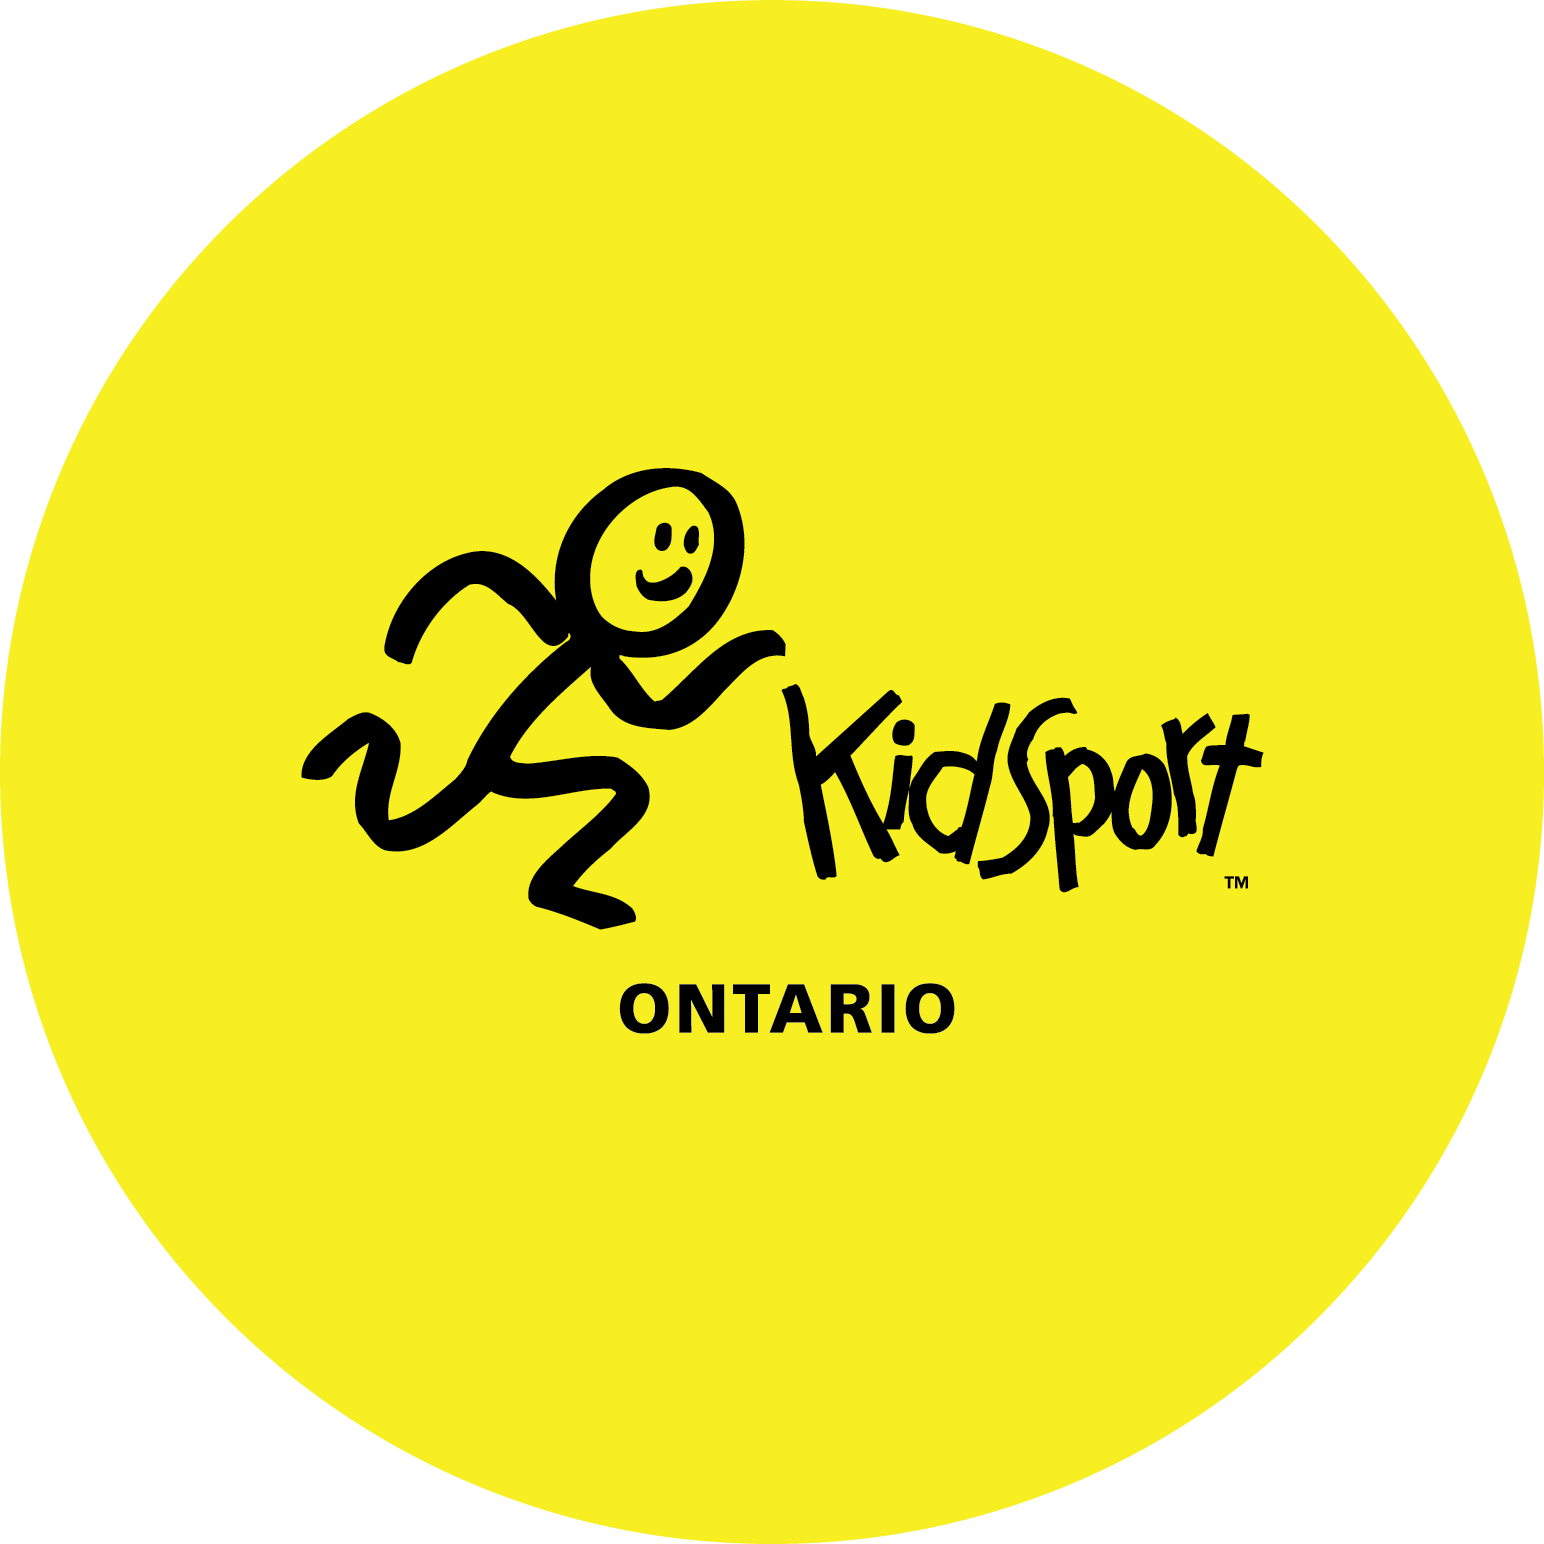 KidSport Ontario